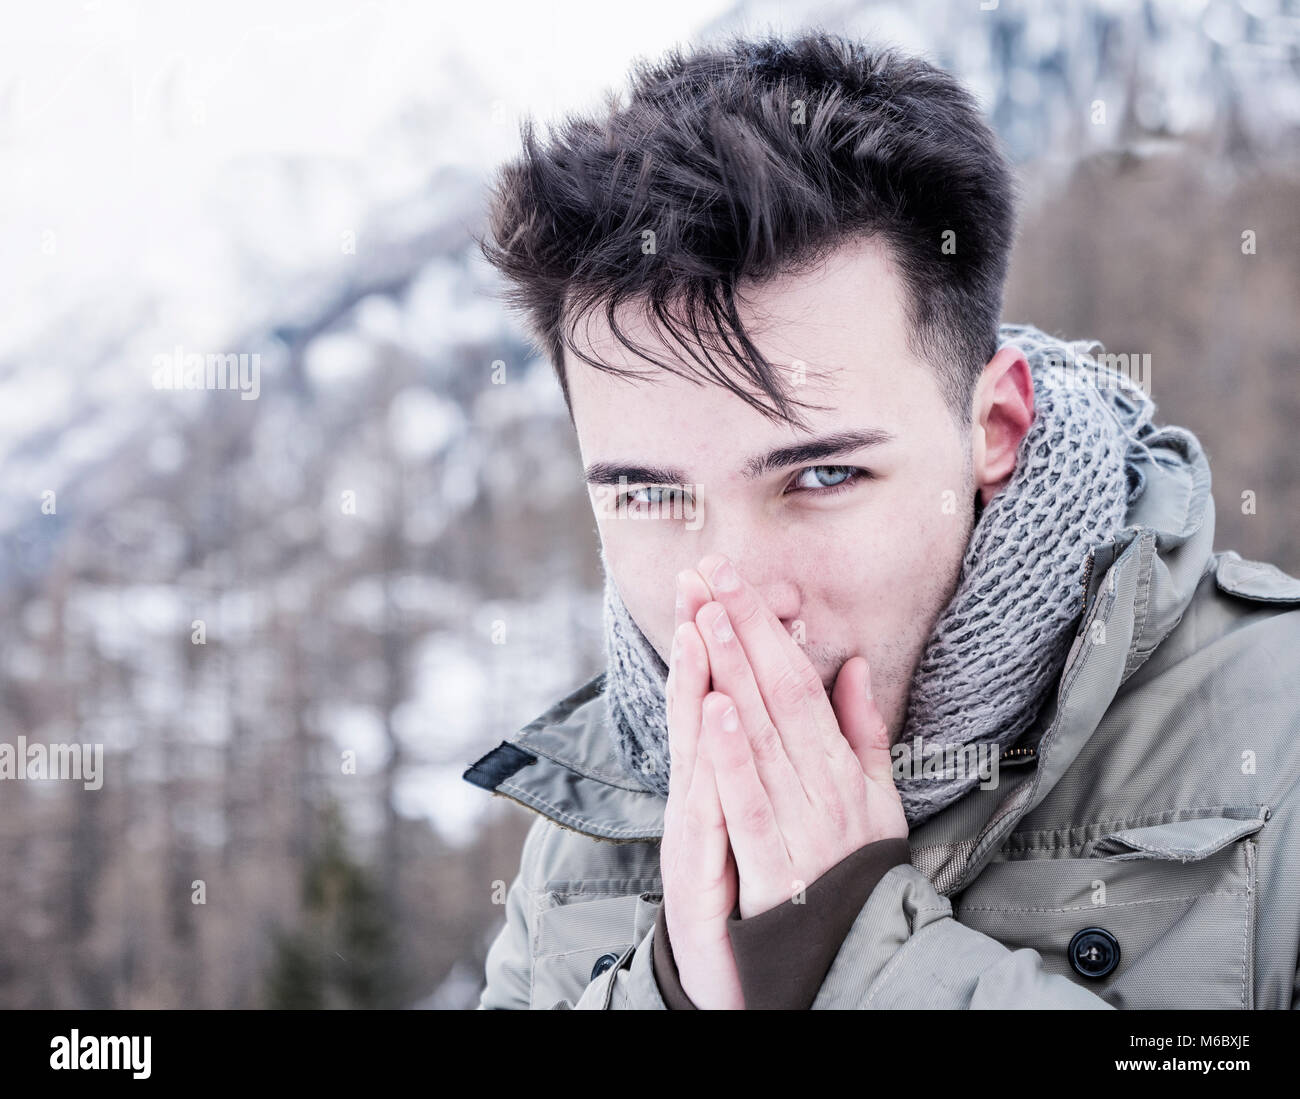 Junge Mann an der Kamera posiert im Schnee Stockfoto